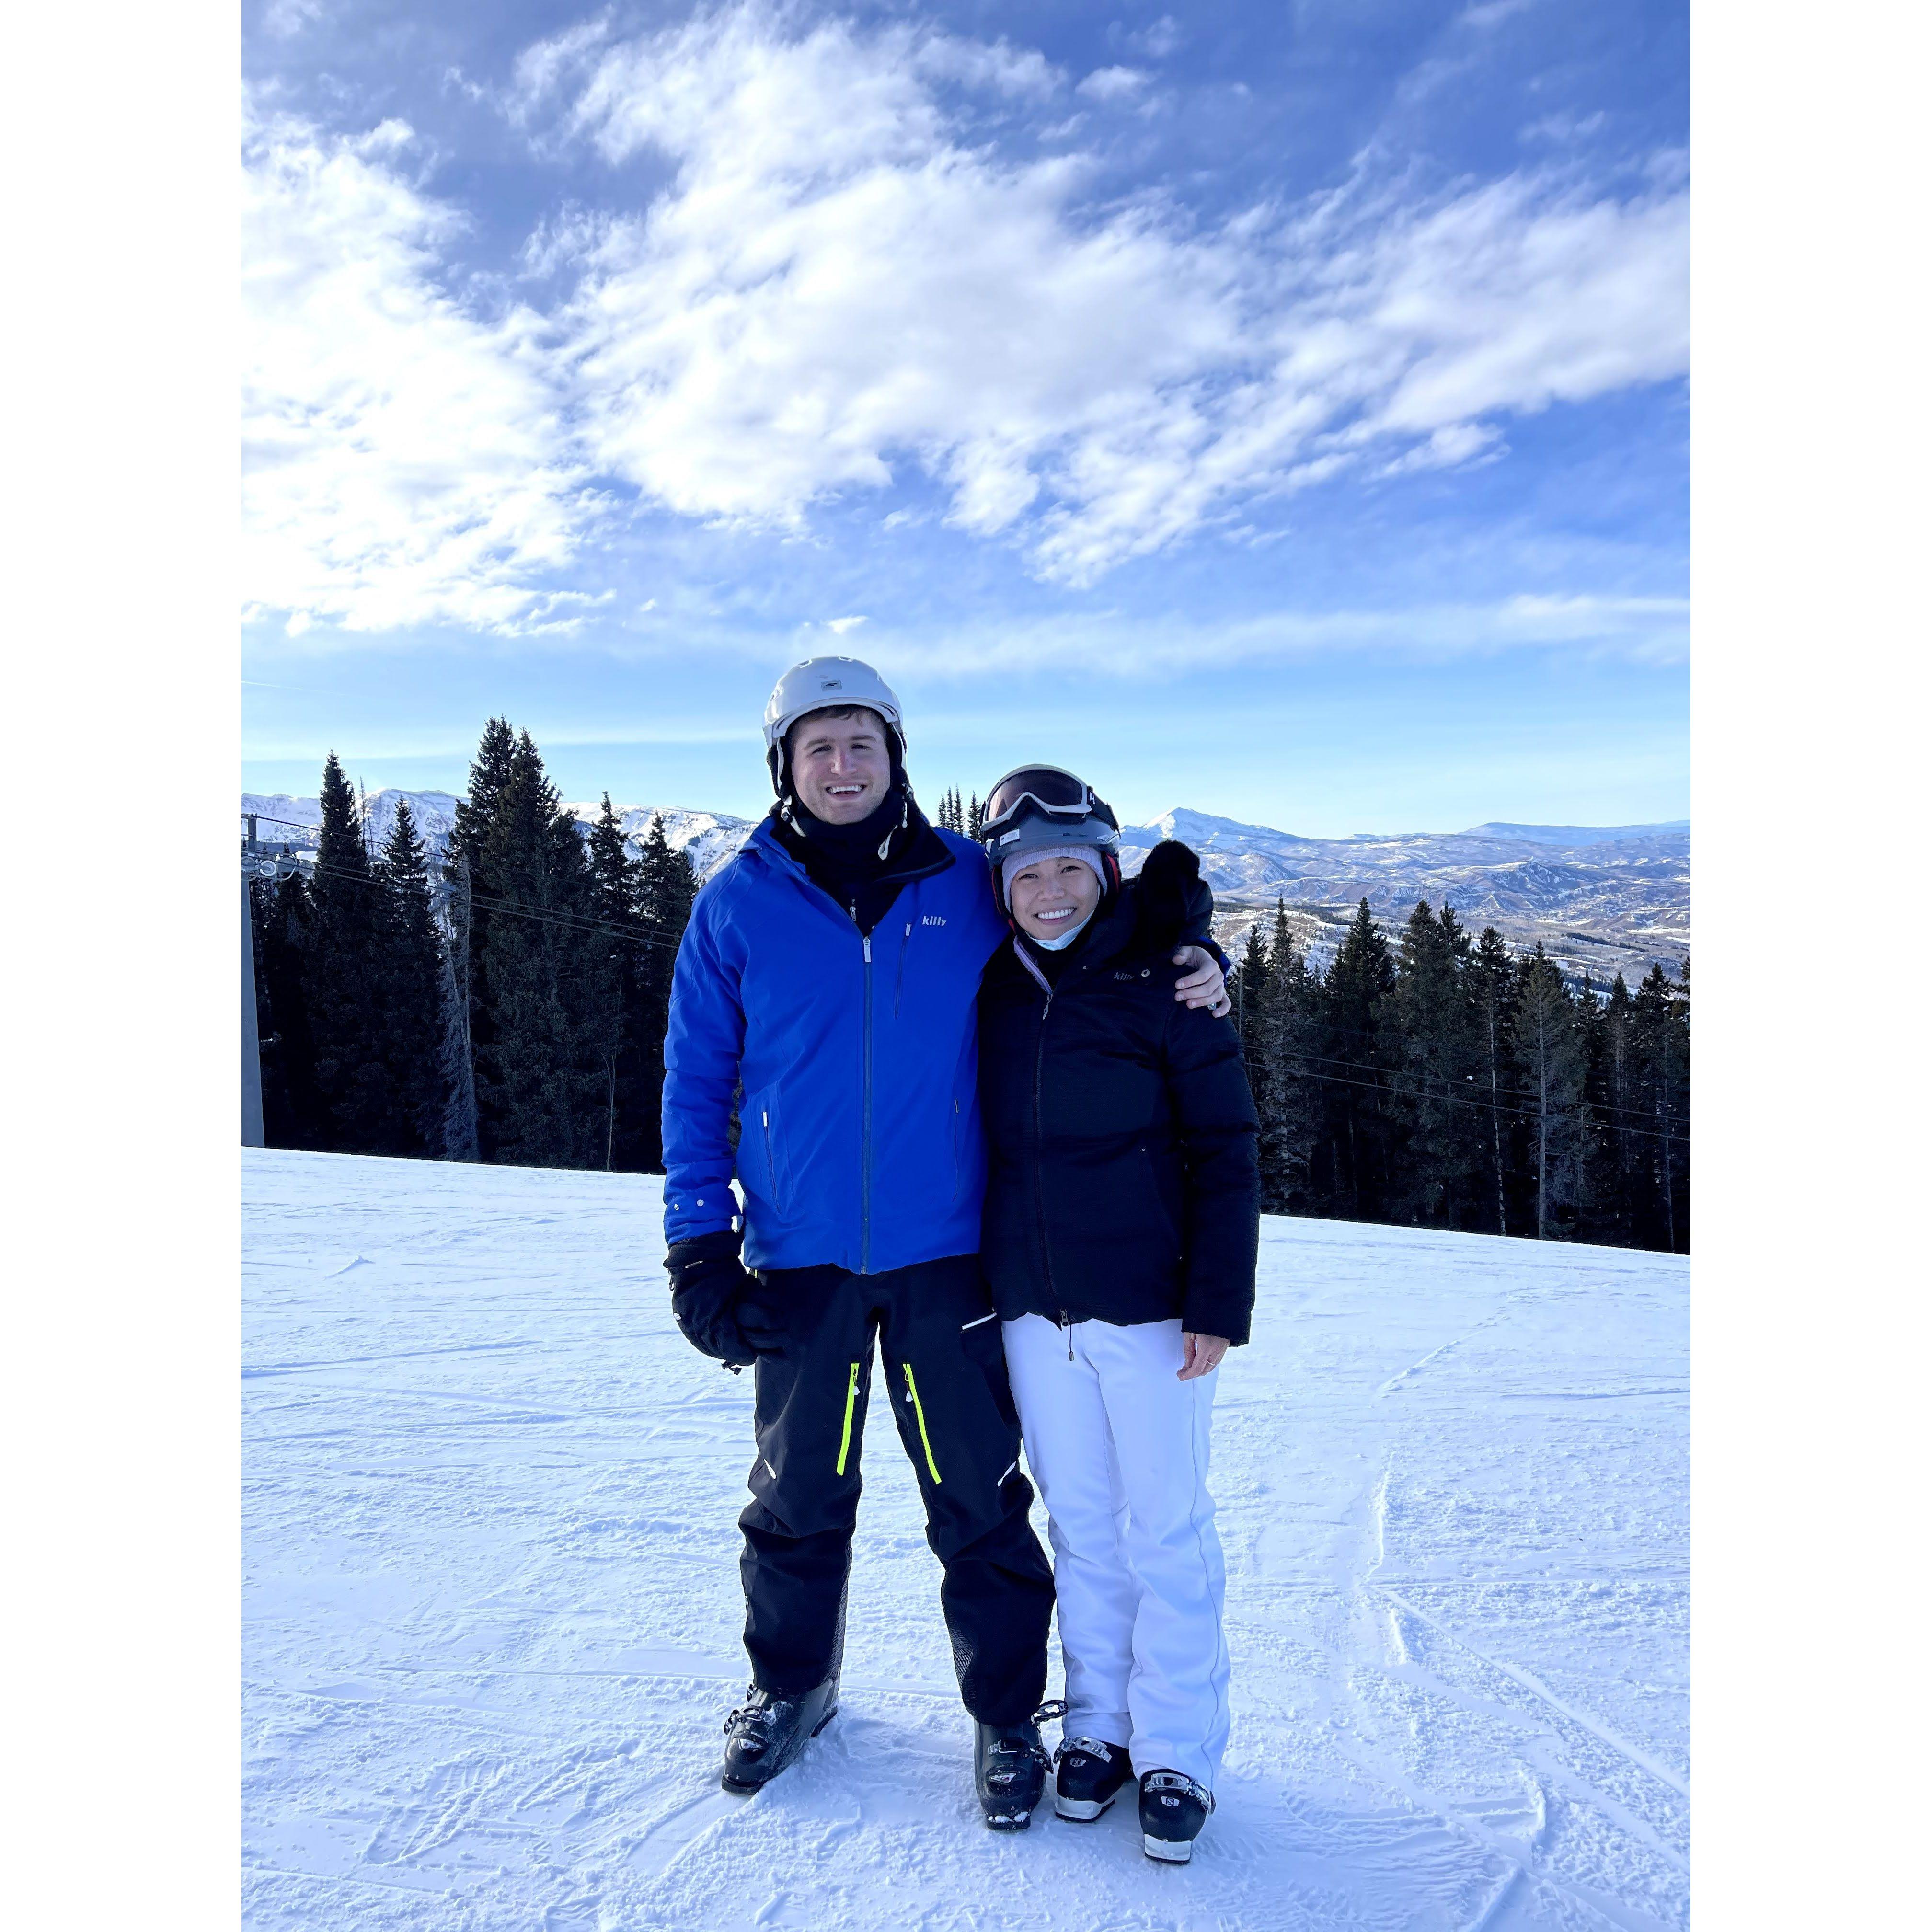 Matt taught Sussy how to ski